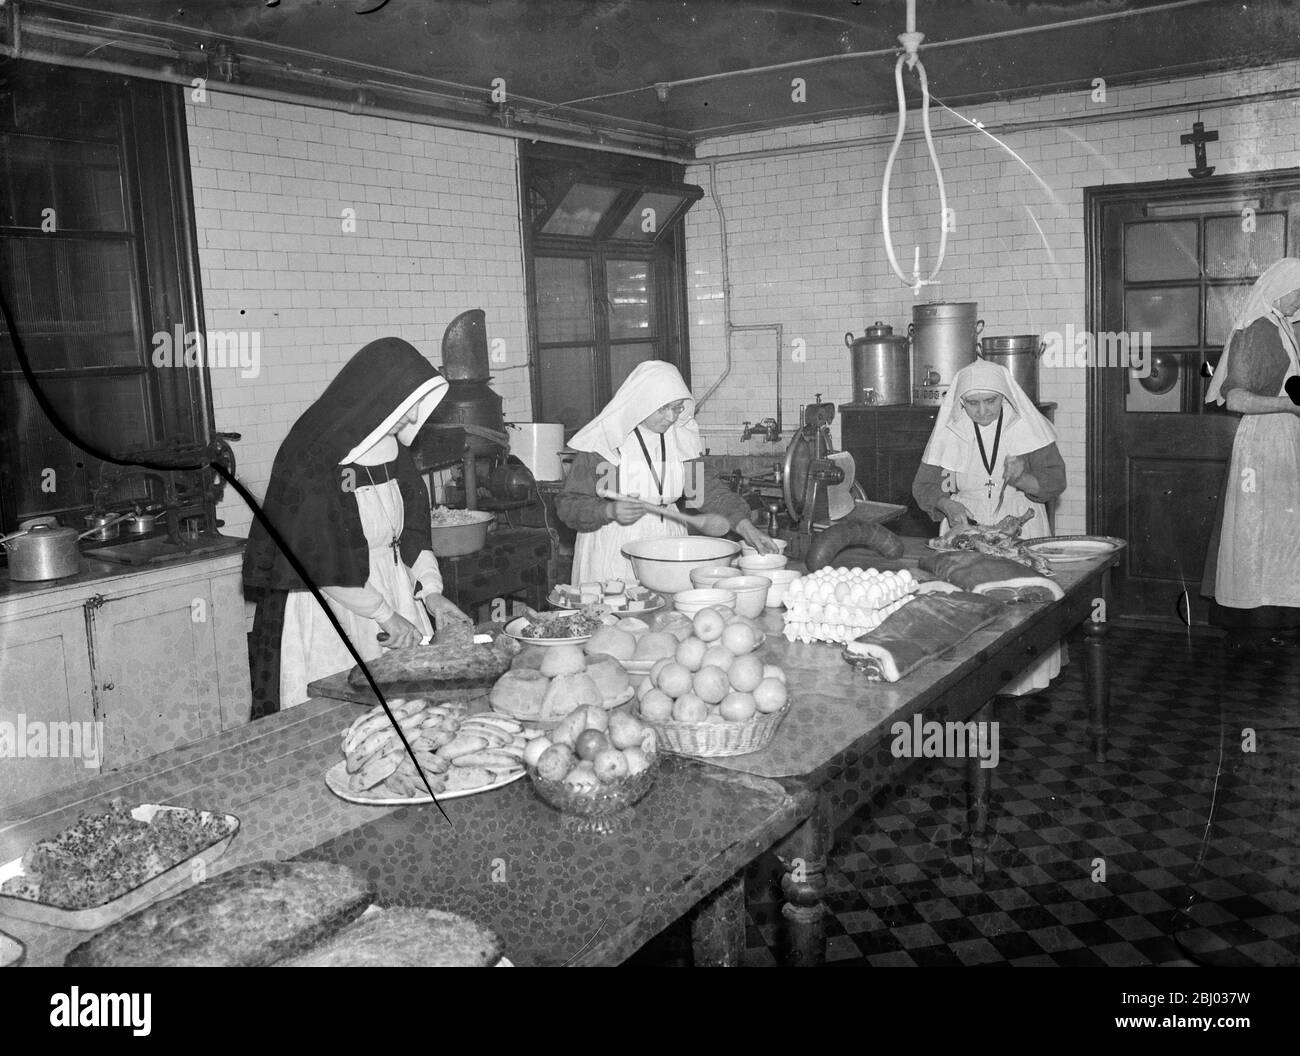 Nonnen kochen für erste-Hilfe-Partys im Kensington Convent, London. - Foto zeigt dann Nonnen in der Küche. - 1939 Stockfoto